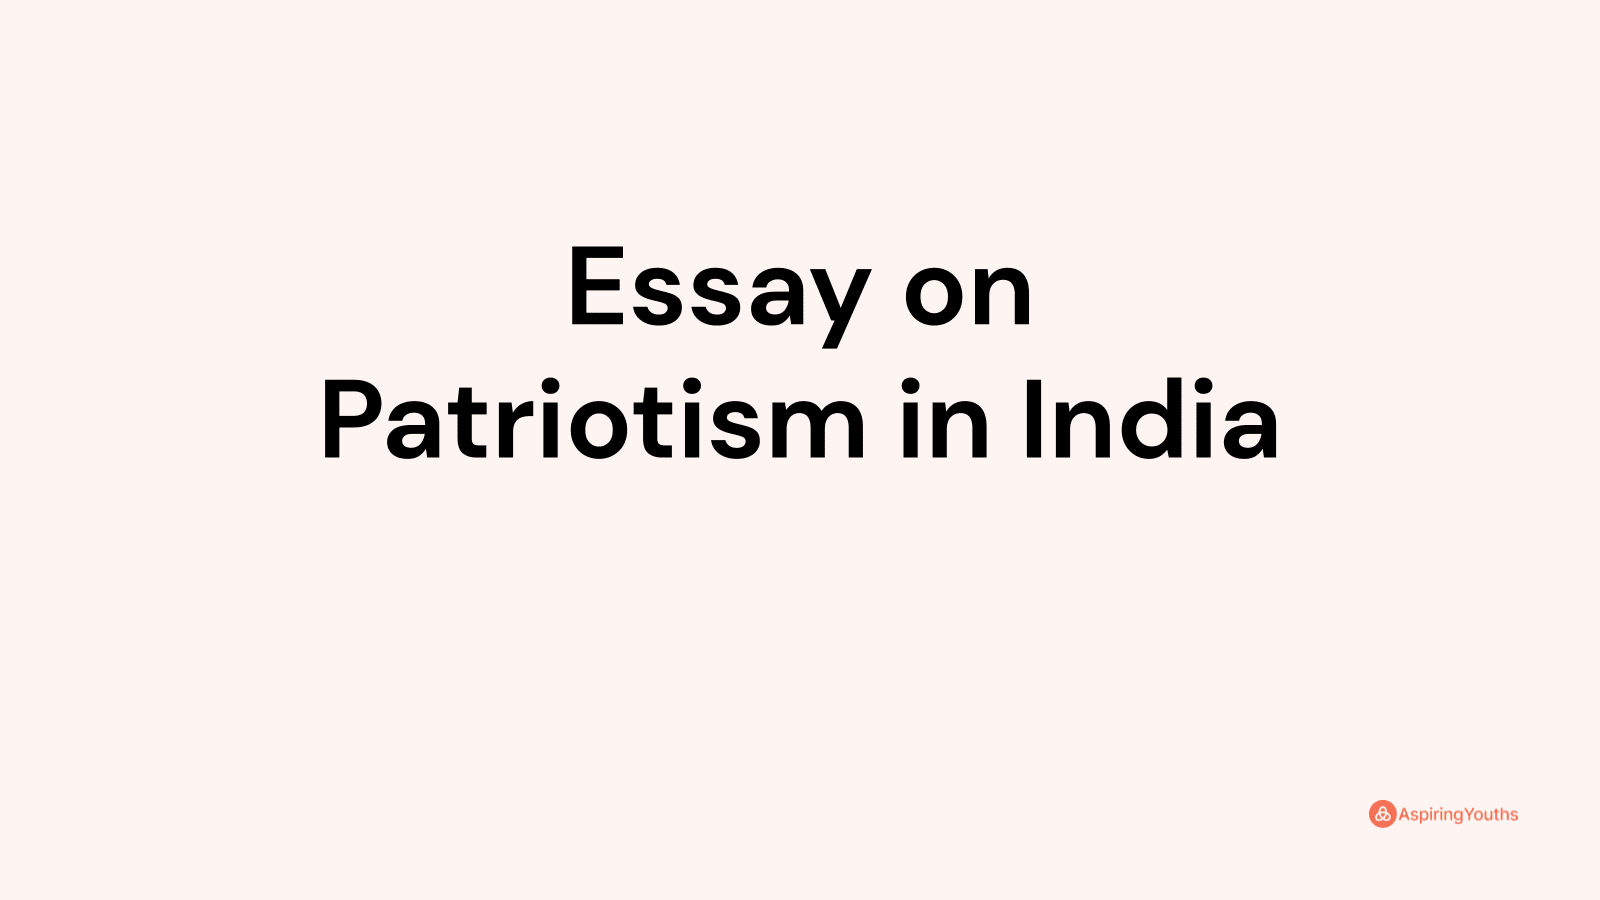 india's patriotism essay